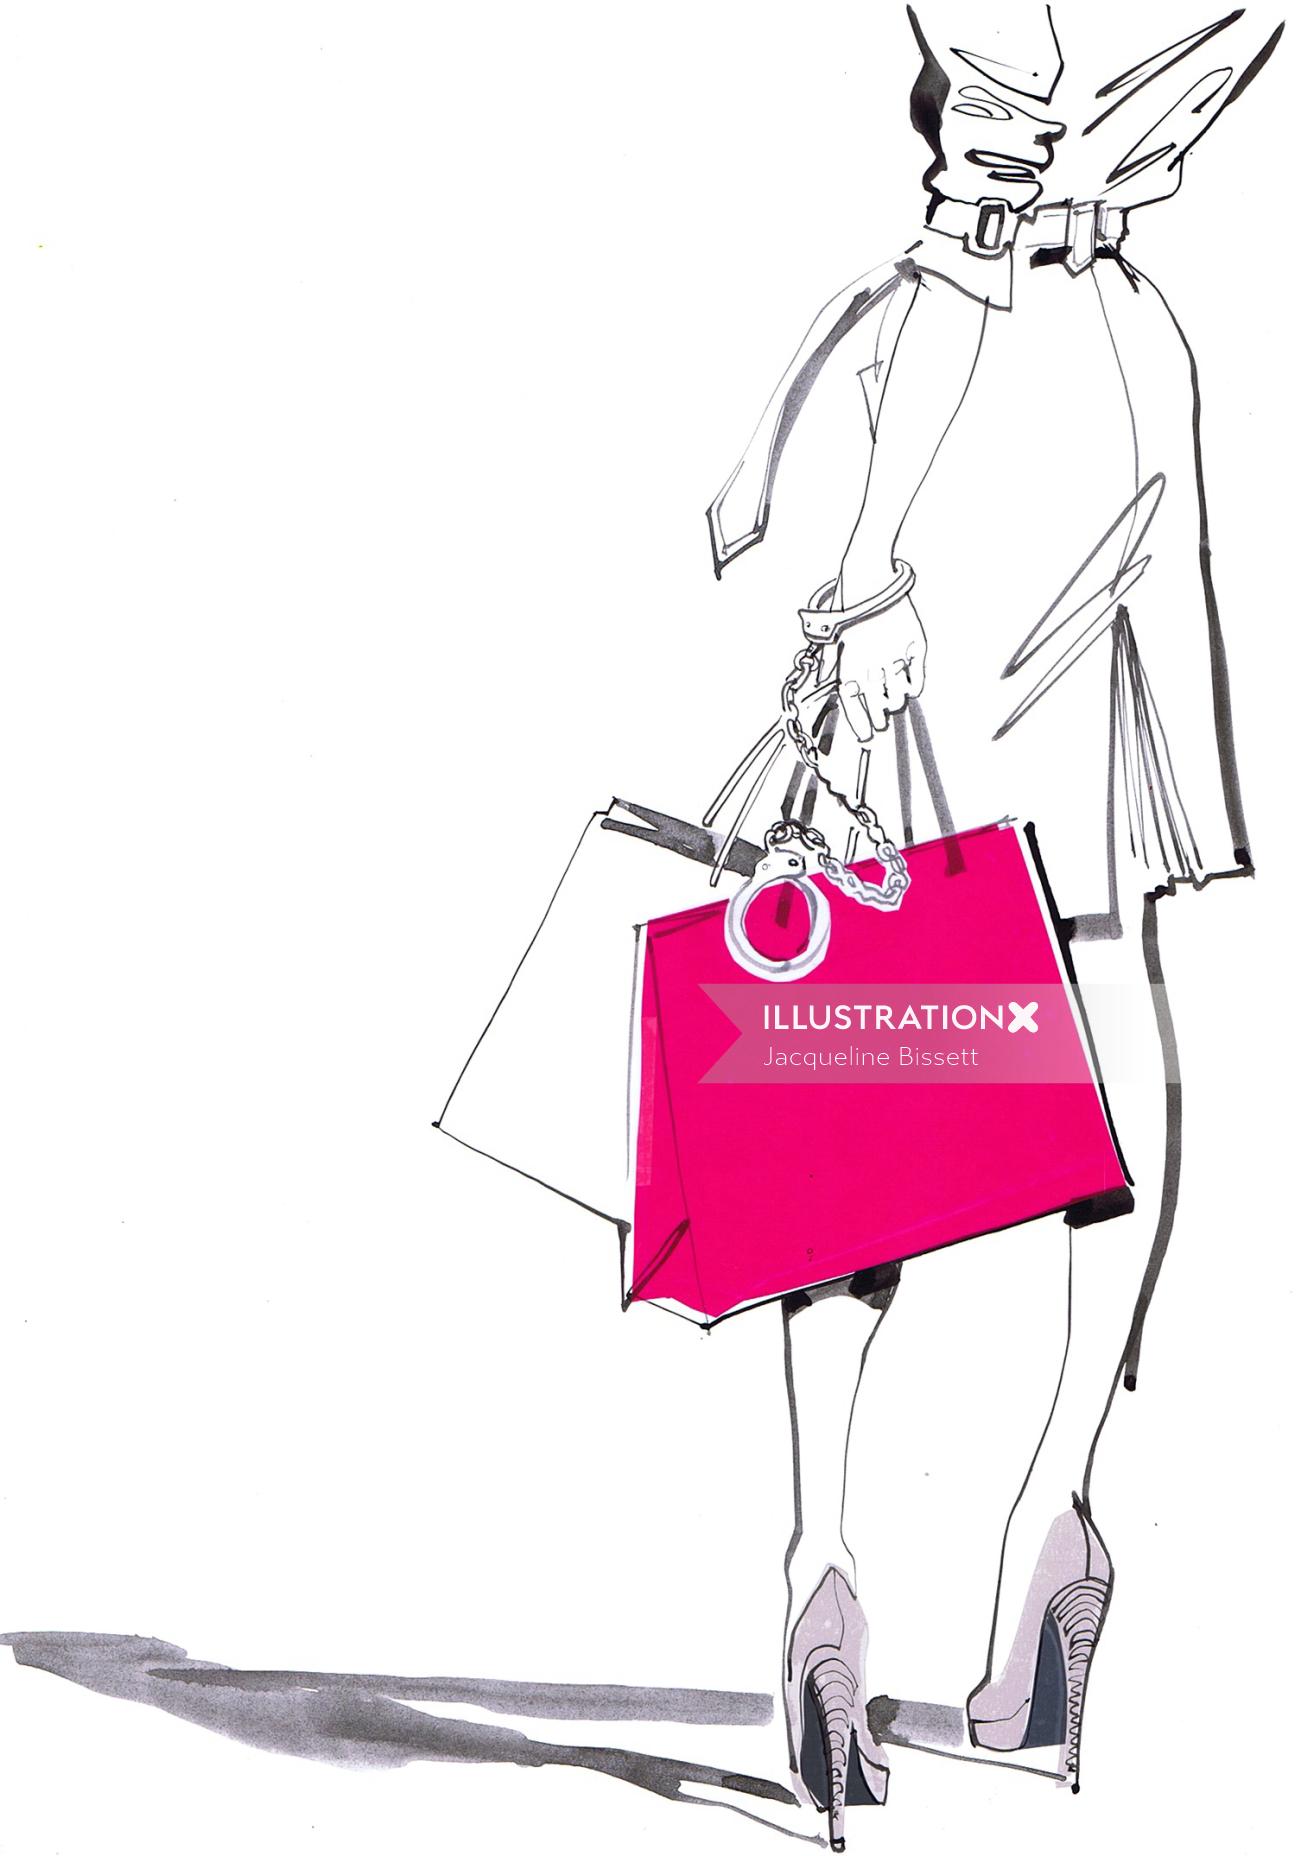 Illustration for shopping center poster US